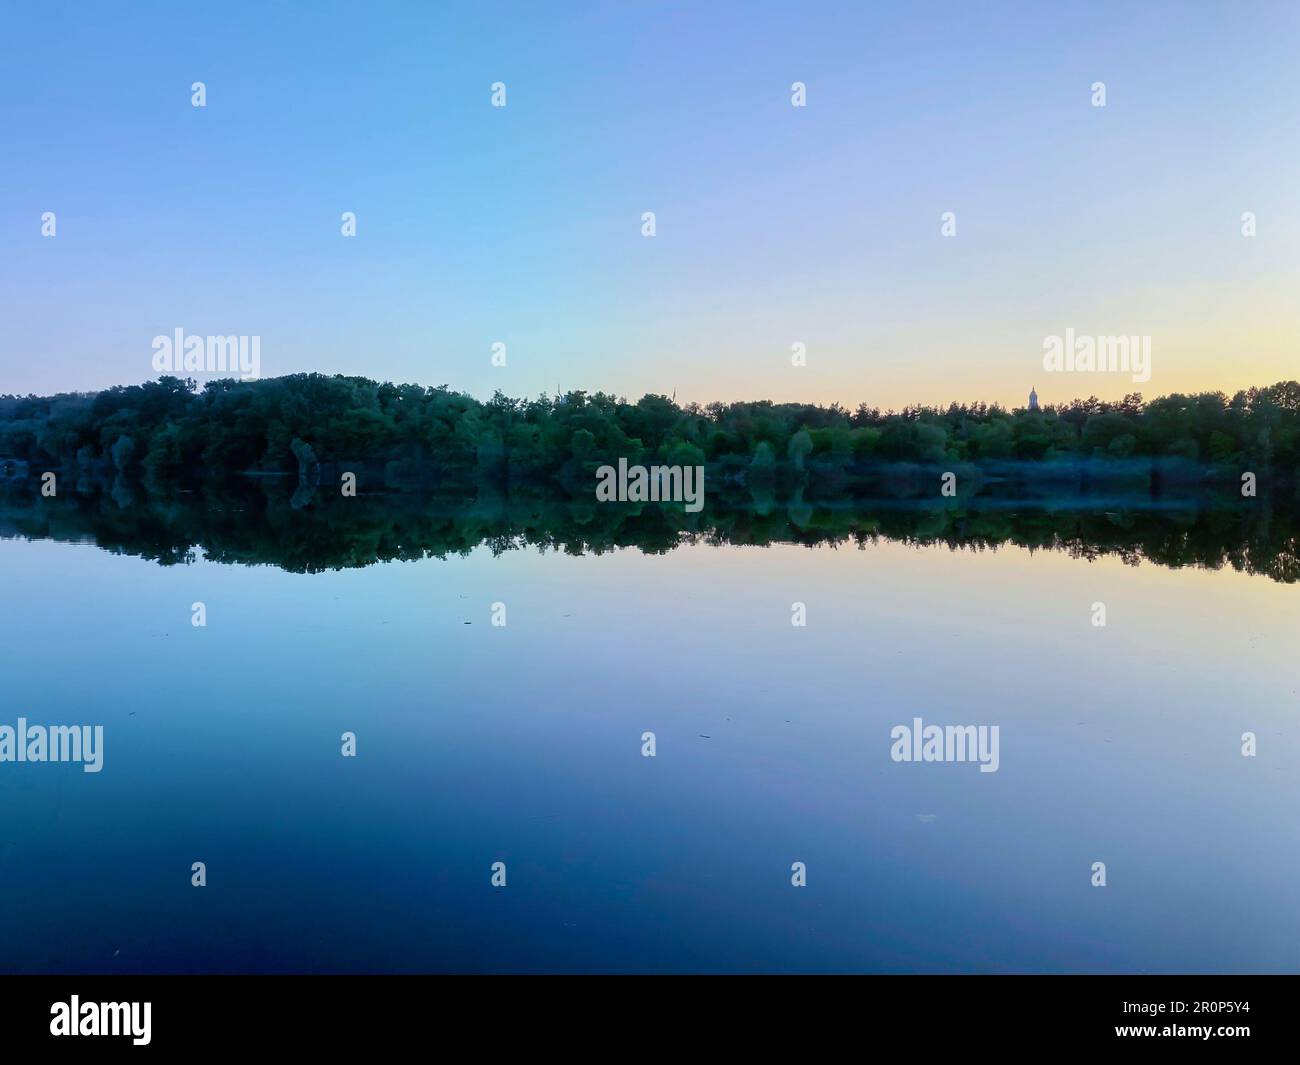 Fiume Biebrza al tramonto, riflesso nell'acqua, sagome di alberi che si riflettono nella calma acqua del fiume. alberi riflessi nel fiume calmo a. Foto Stock